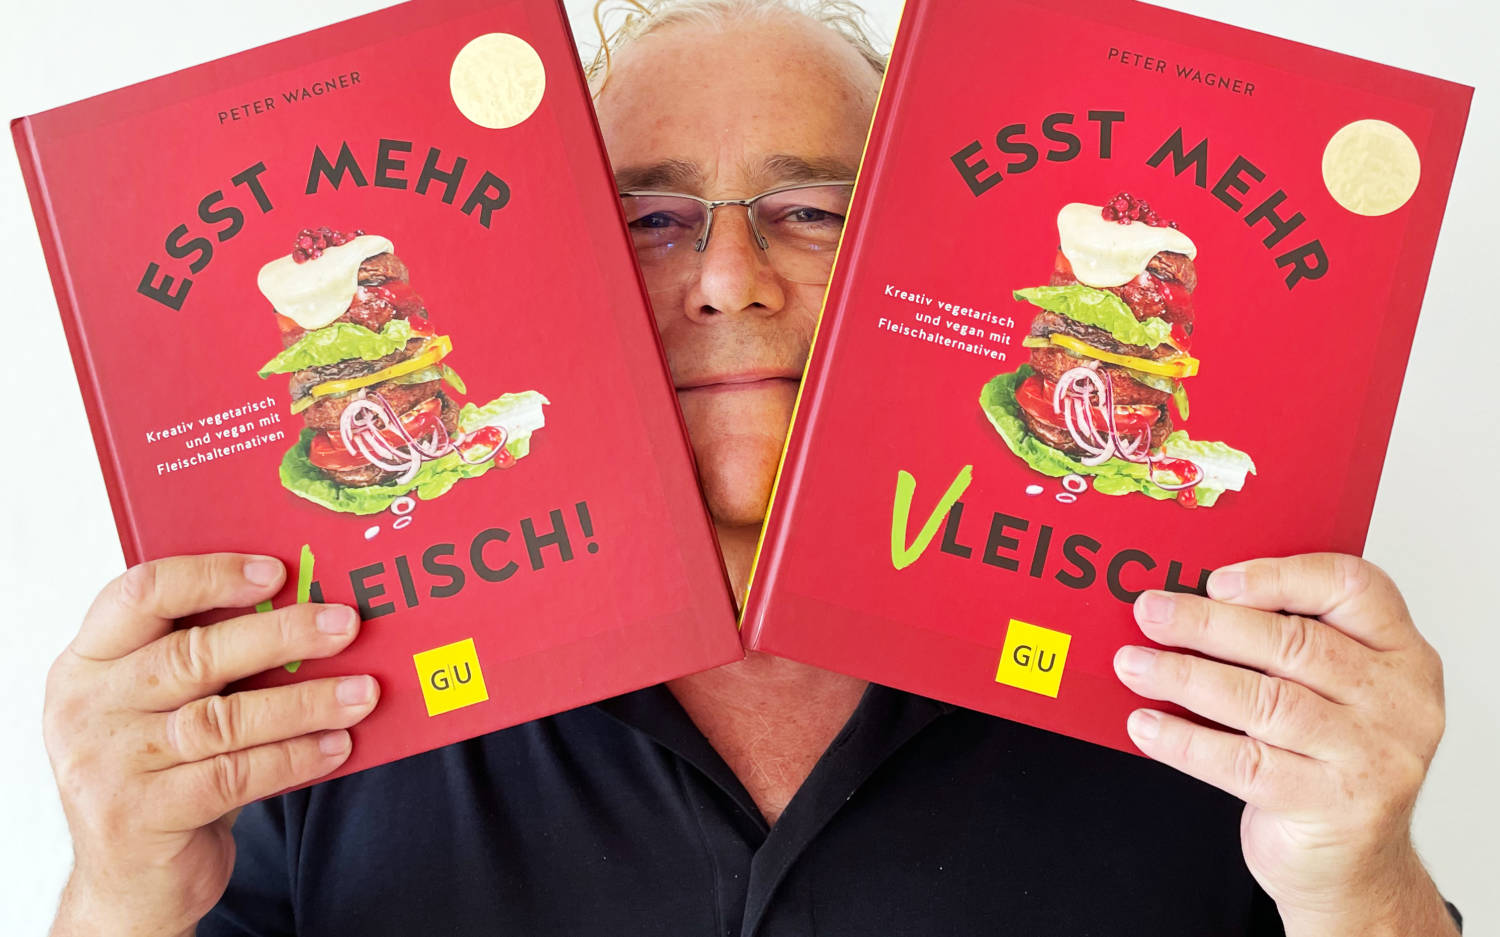 Peter Wagners neuestes Kochbuch: „Esst mehr Vleisch!“ Fleischgerichte ohne Fleisch, dafür mit pflanzlichen Alternativen 